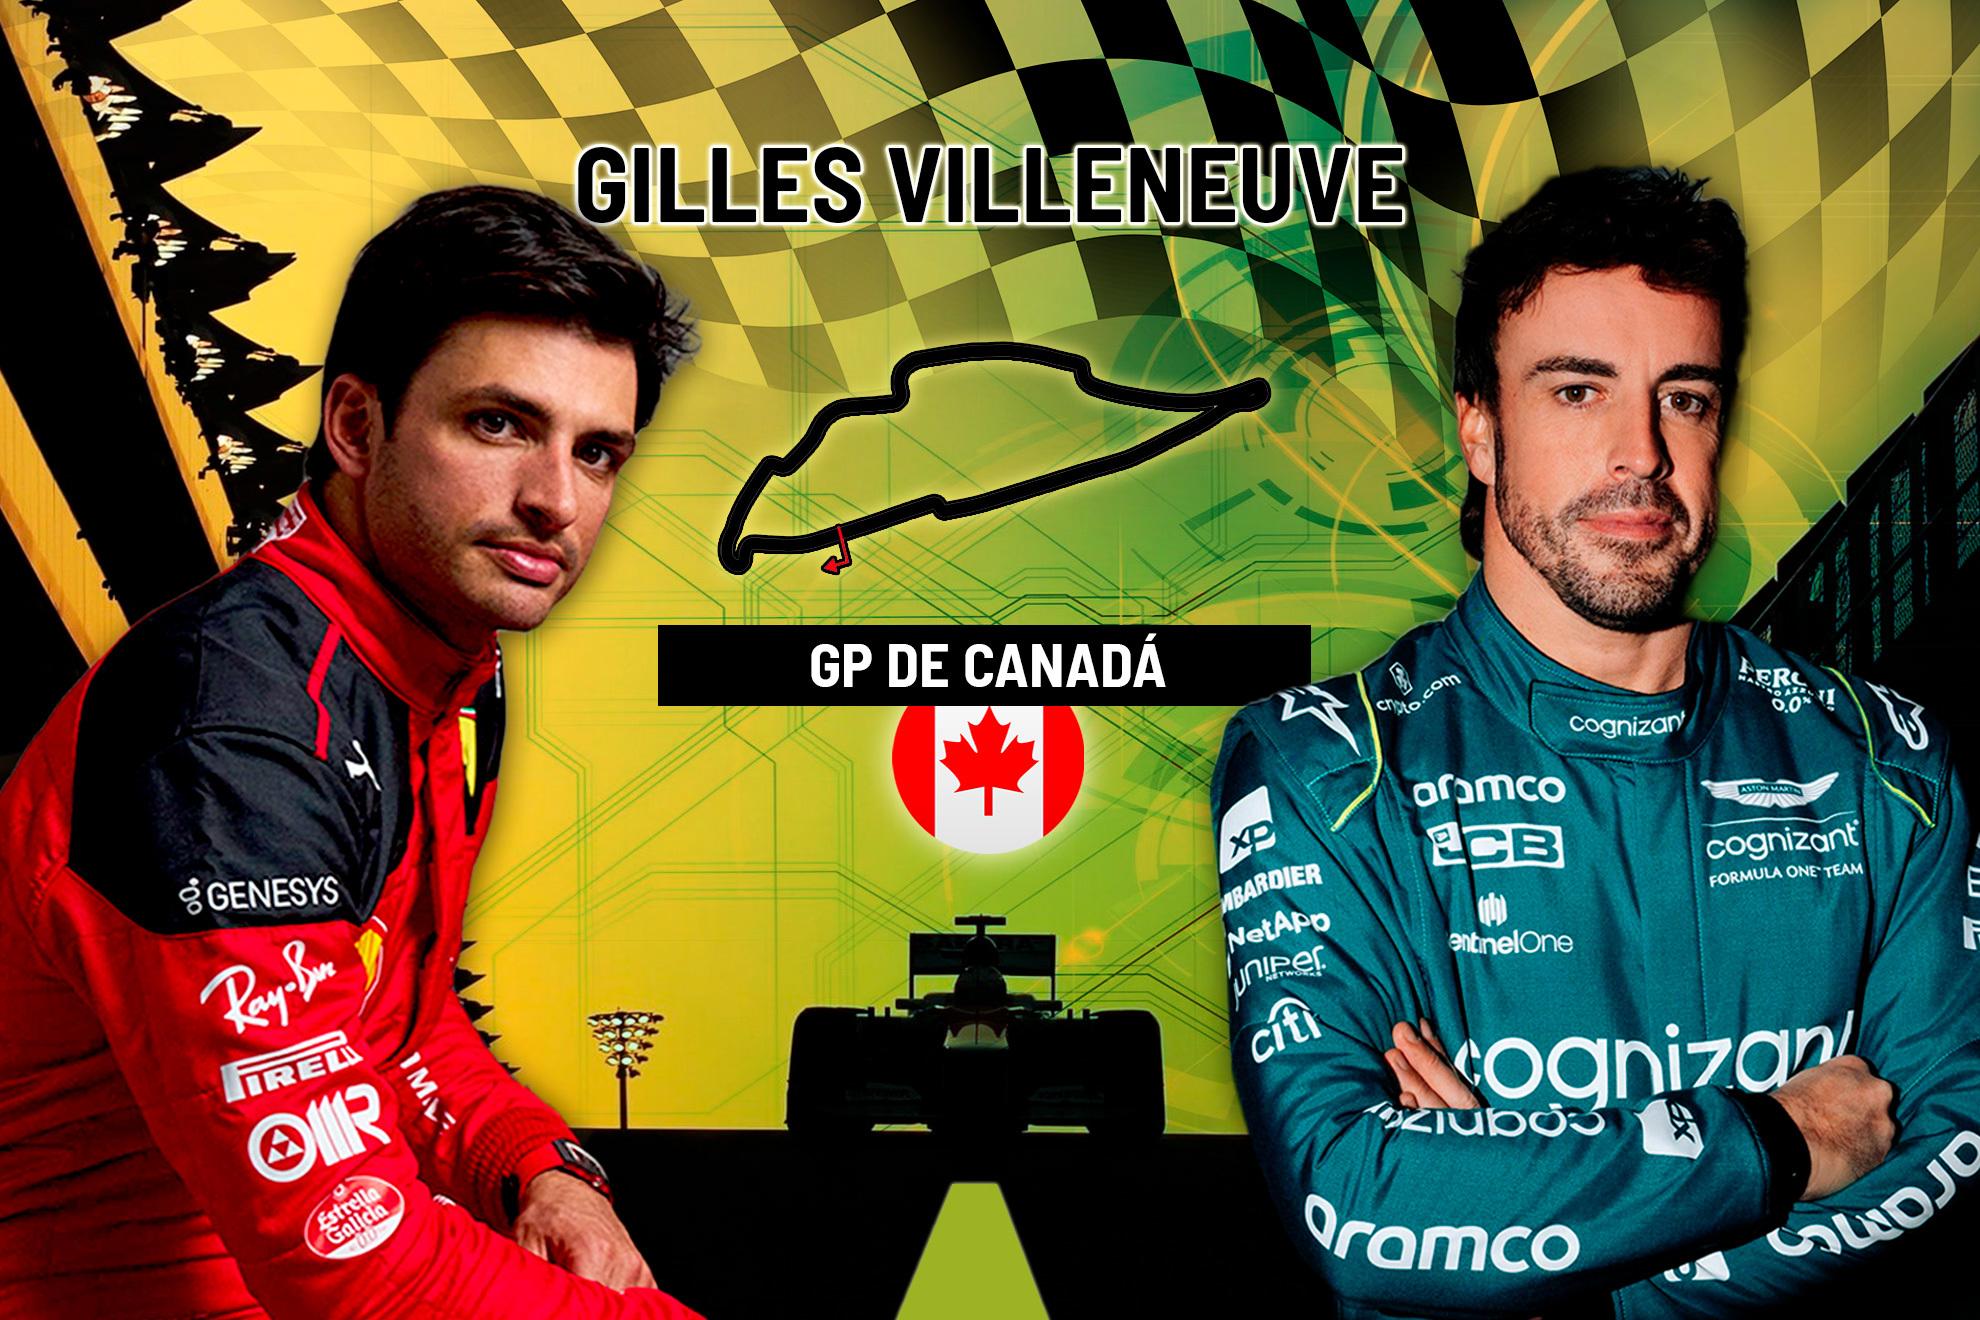 Carrera del GP de Canadá de F1 en directo | Alonso y Sainz hoy en vivo